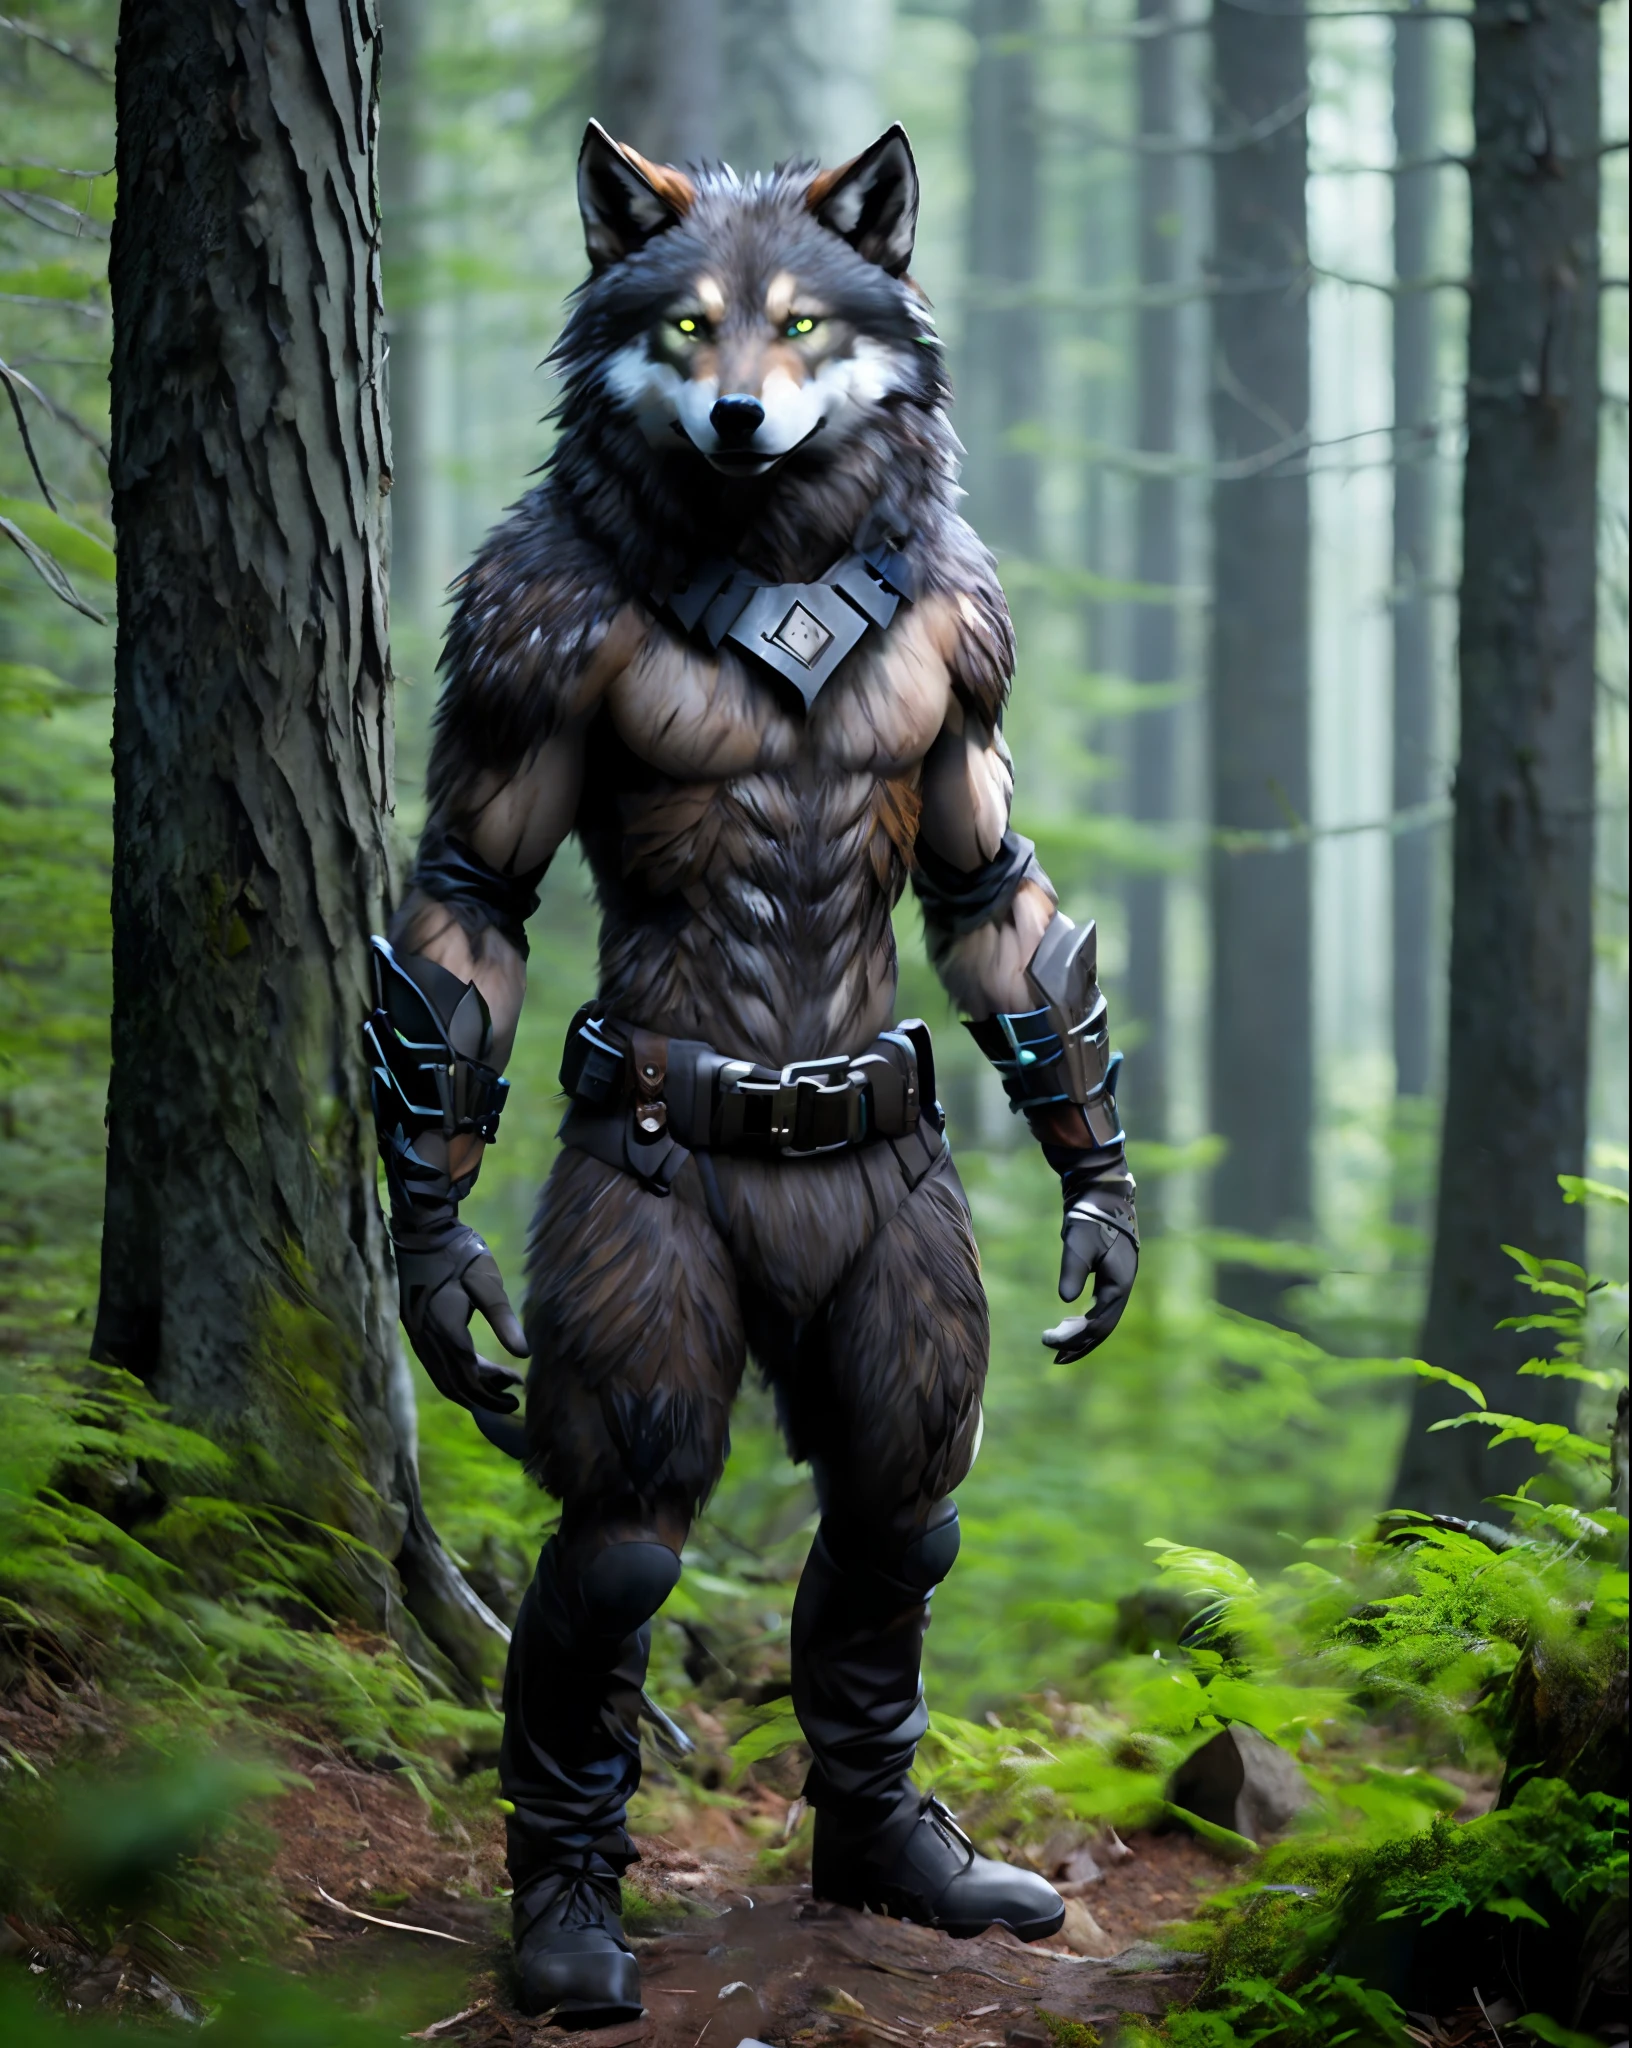 Fking_sciFi_v2, Werwesen, werewolF wolF, großer Kopf, (grüne Augen), standing in a Forest, toolbelt, 80mm, F/1.8